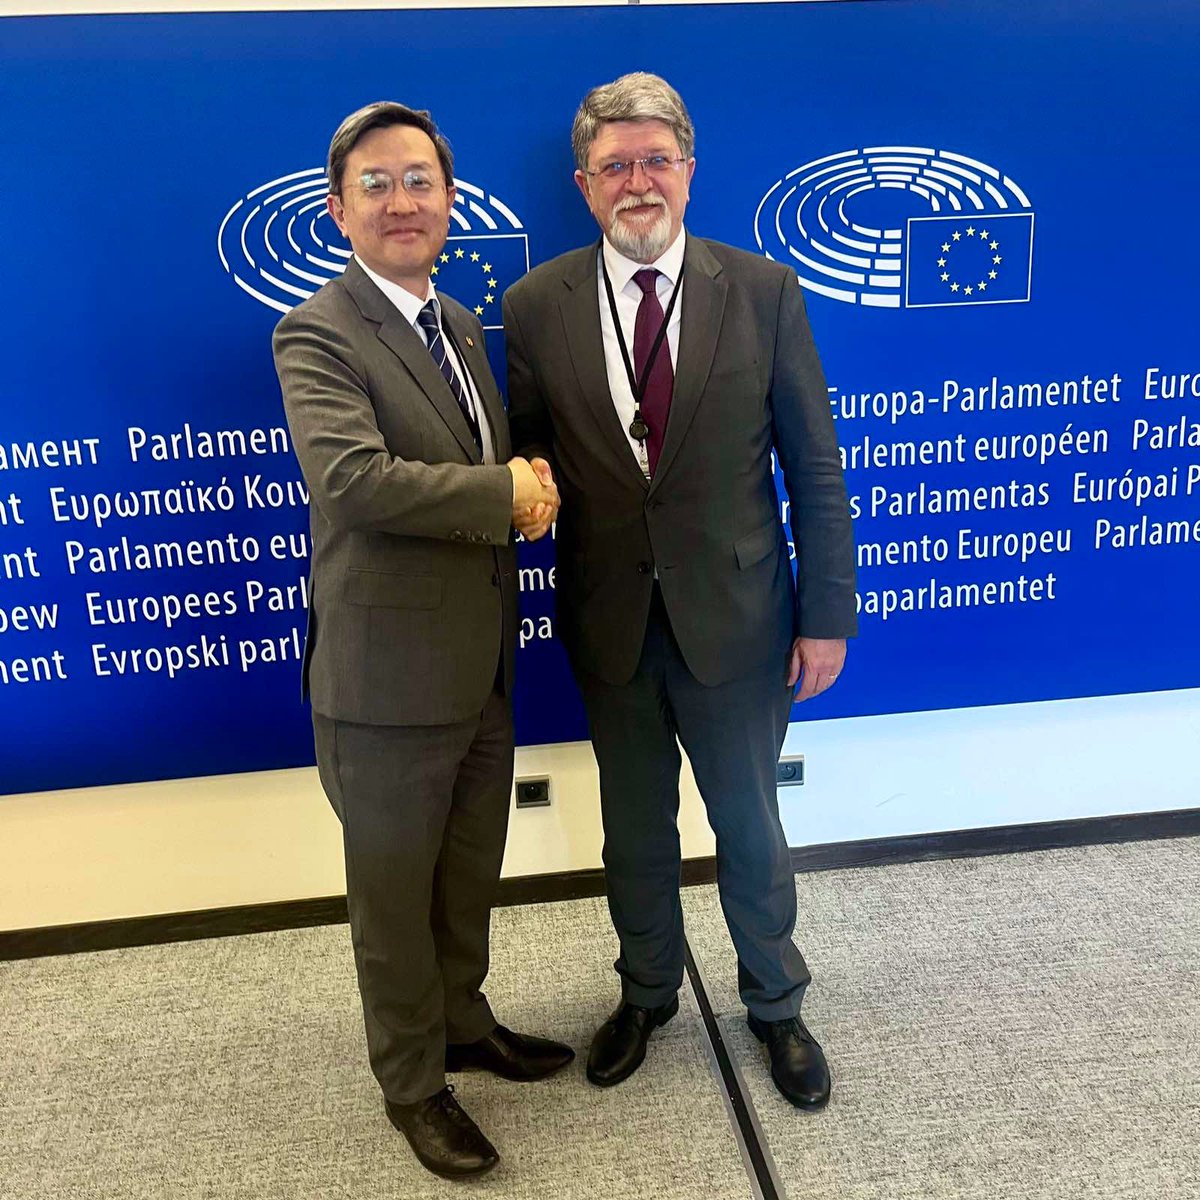 Susret u @Europarl_HR s Dr. Roy Chun Leejem, predstavnikom @TaiwanEU. Naglasio sam kontinuitet dobre suradnje Europskog parlamenta i Tajvana, pogotovo nakon povijesnog posjeta @EP_ForeignAff Tajvanu prošle godine.